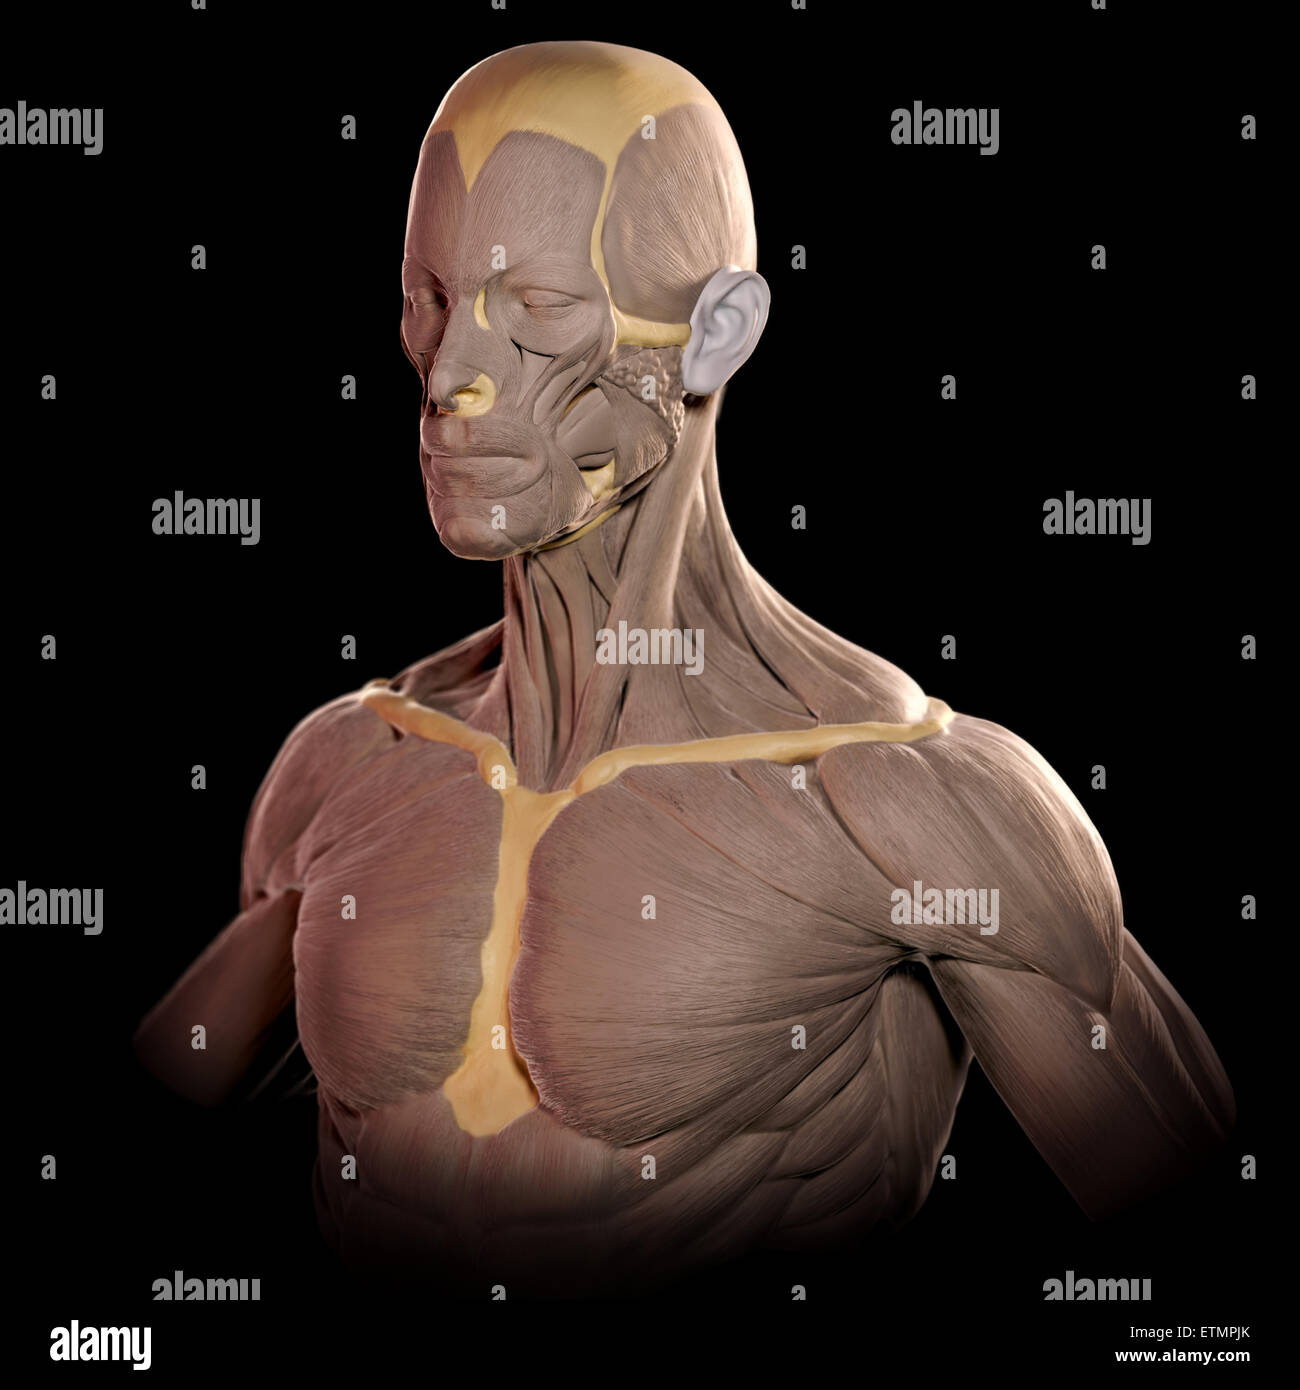 Imagen conceptual en el estilo de un modelo de arcilla de los músculos de la cara y parte superior del cuerpo. Foto de stock